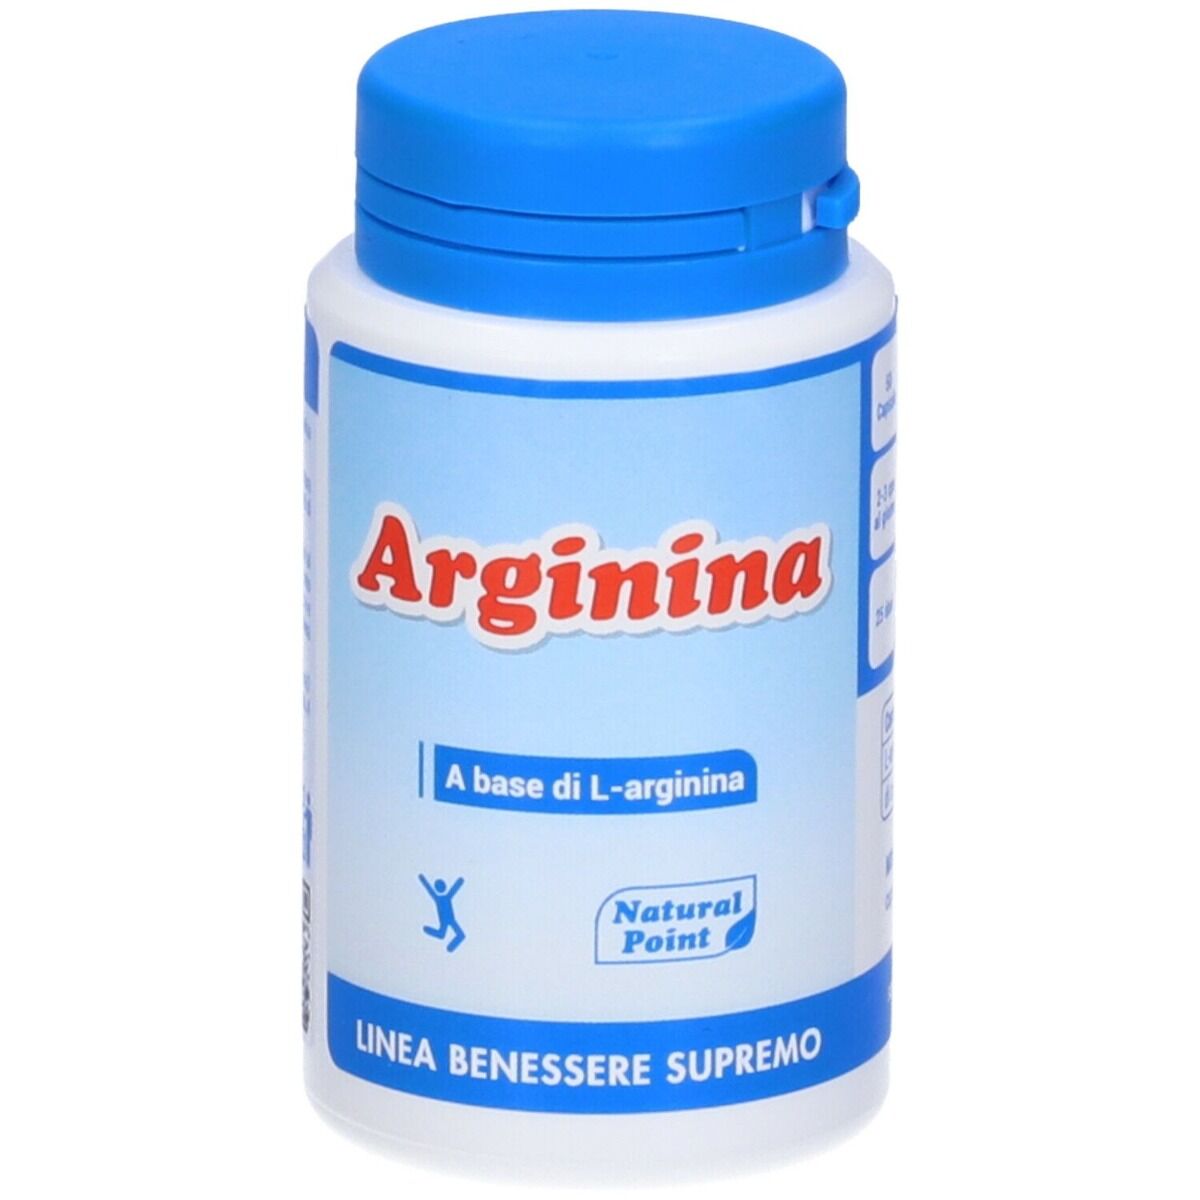 NATURAL POINT Arginina 50 Capsule